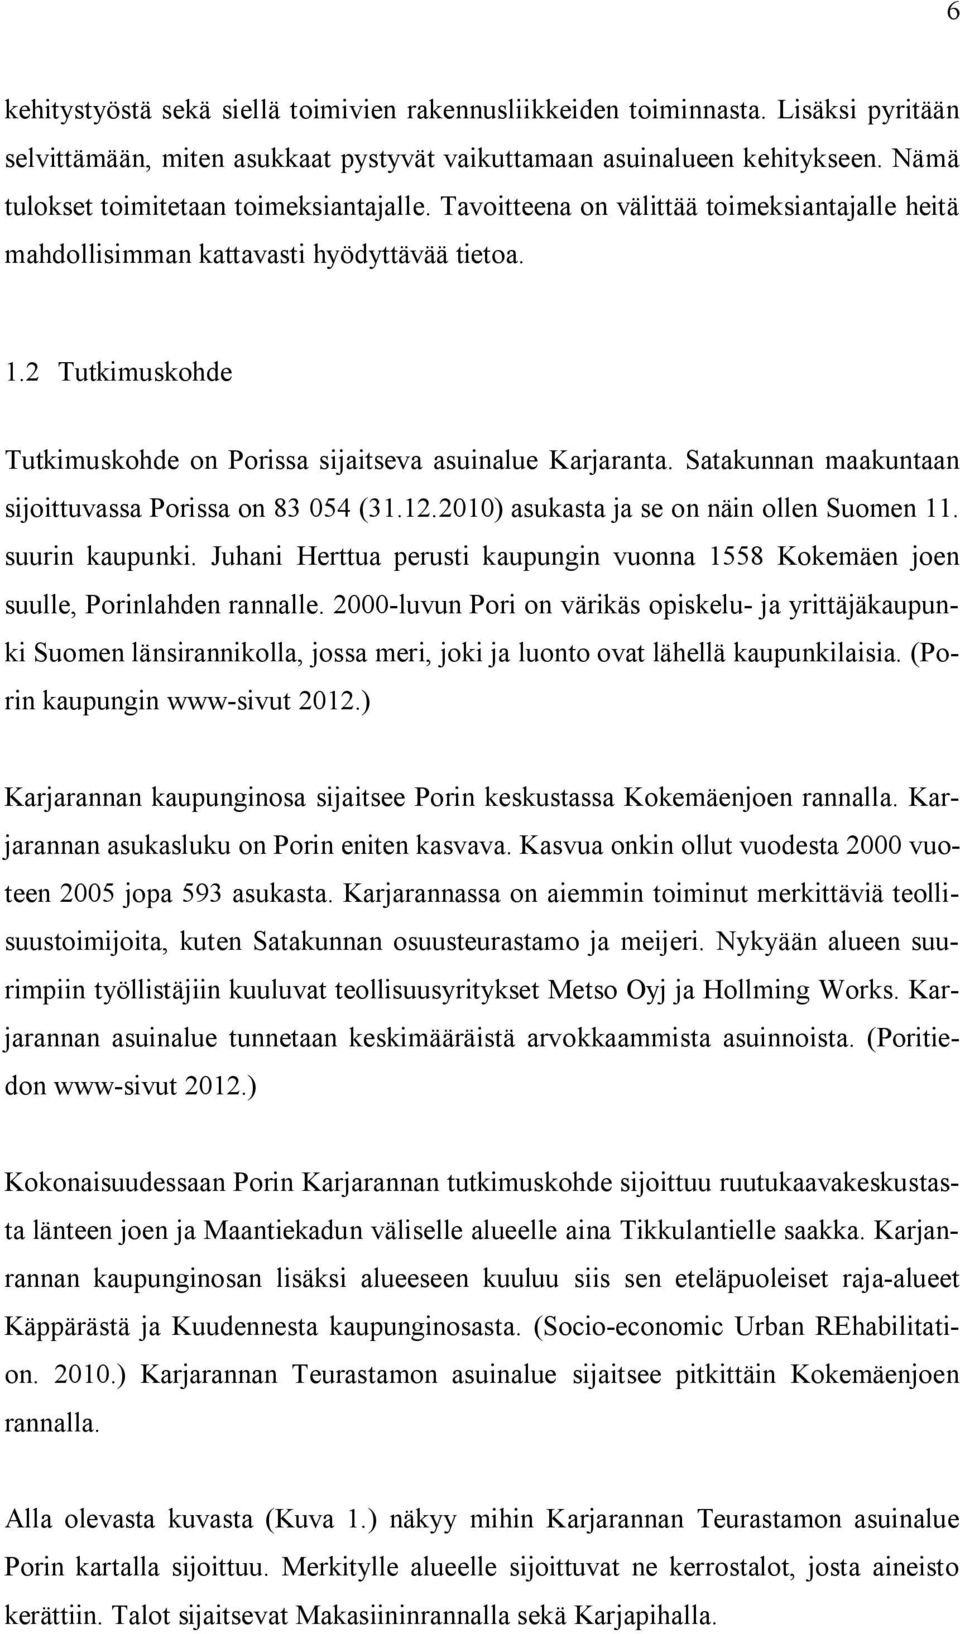 2 Tutkimuskohde Tutkimuskohde on Porissa sijaitseva asuinalue Karjaranta. Satakunnan maakuntaan sijoittuvassa Porissa on 83 054 (31.12.2010) asukasta ja se on näin ollen Suomen 11. suurin kaupunki.